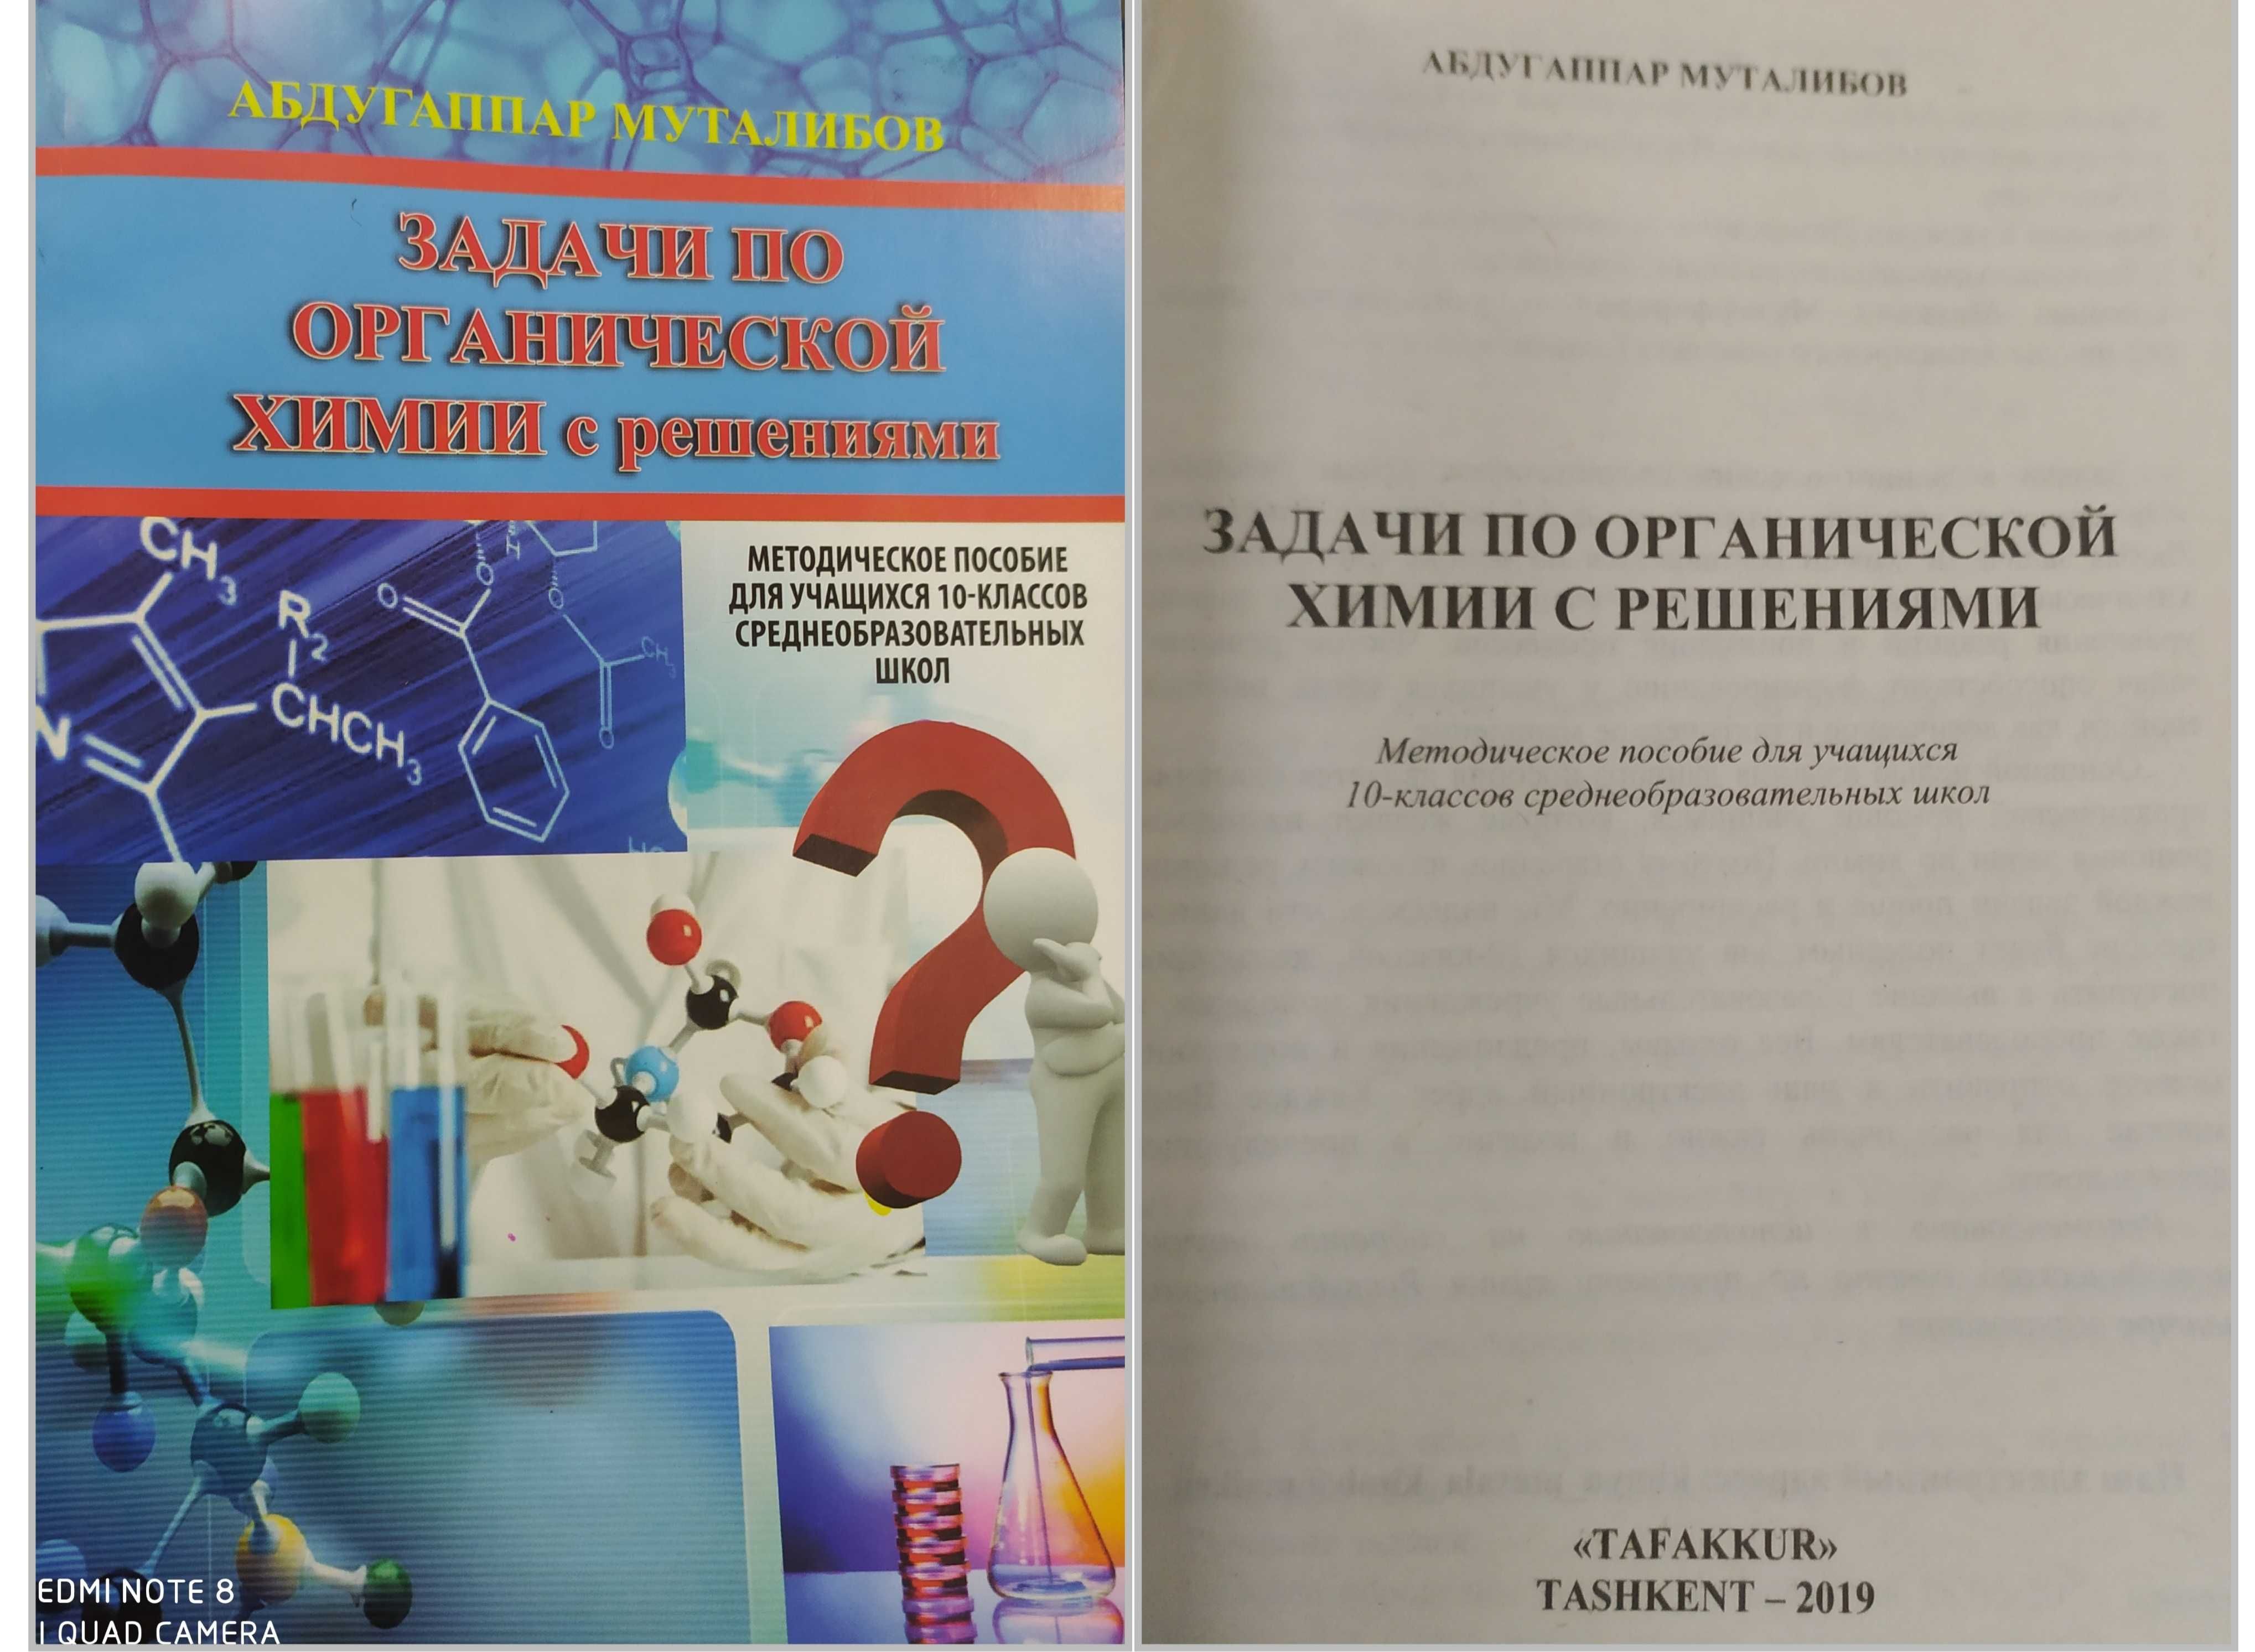 Пособие по химии Хомченко сборник задач и упражнений общая химия 7-11